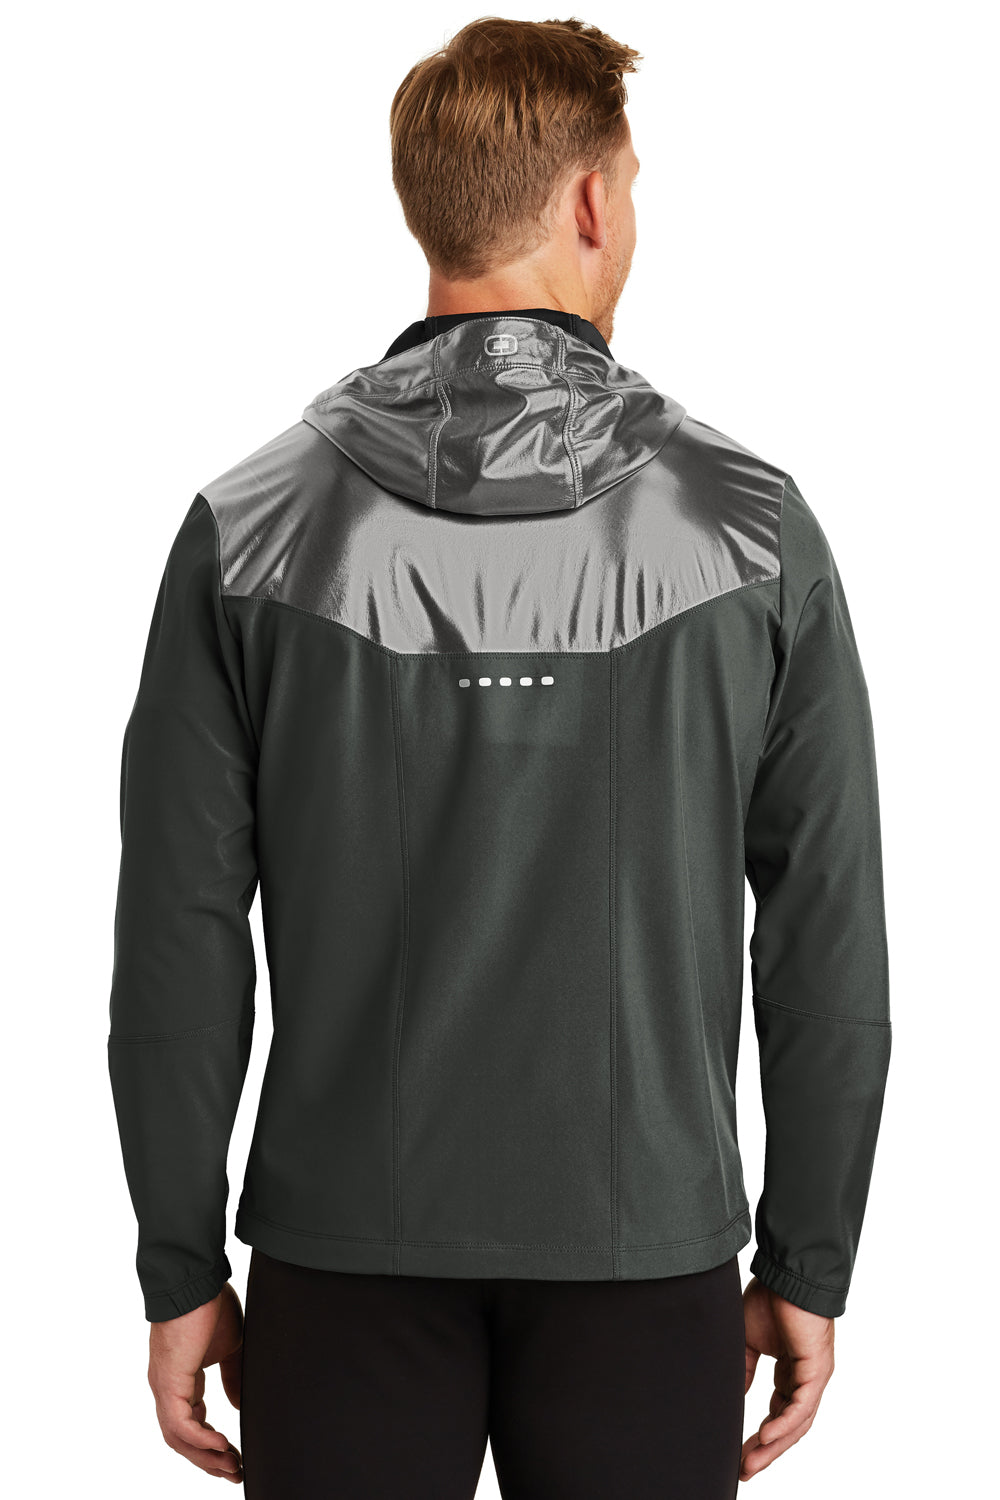 Ogio OE723 Mens Endurance Liquid Wind & Water Resistant Full Zip Hooded Jacket Black Back